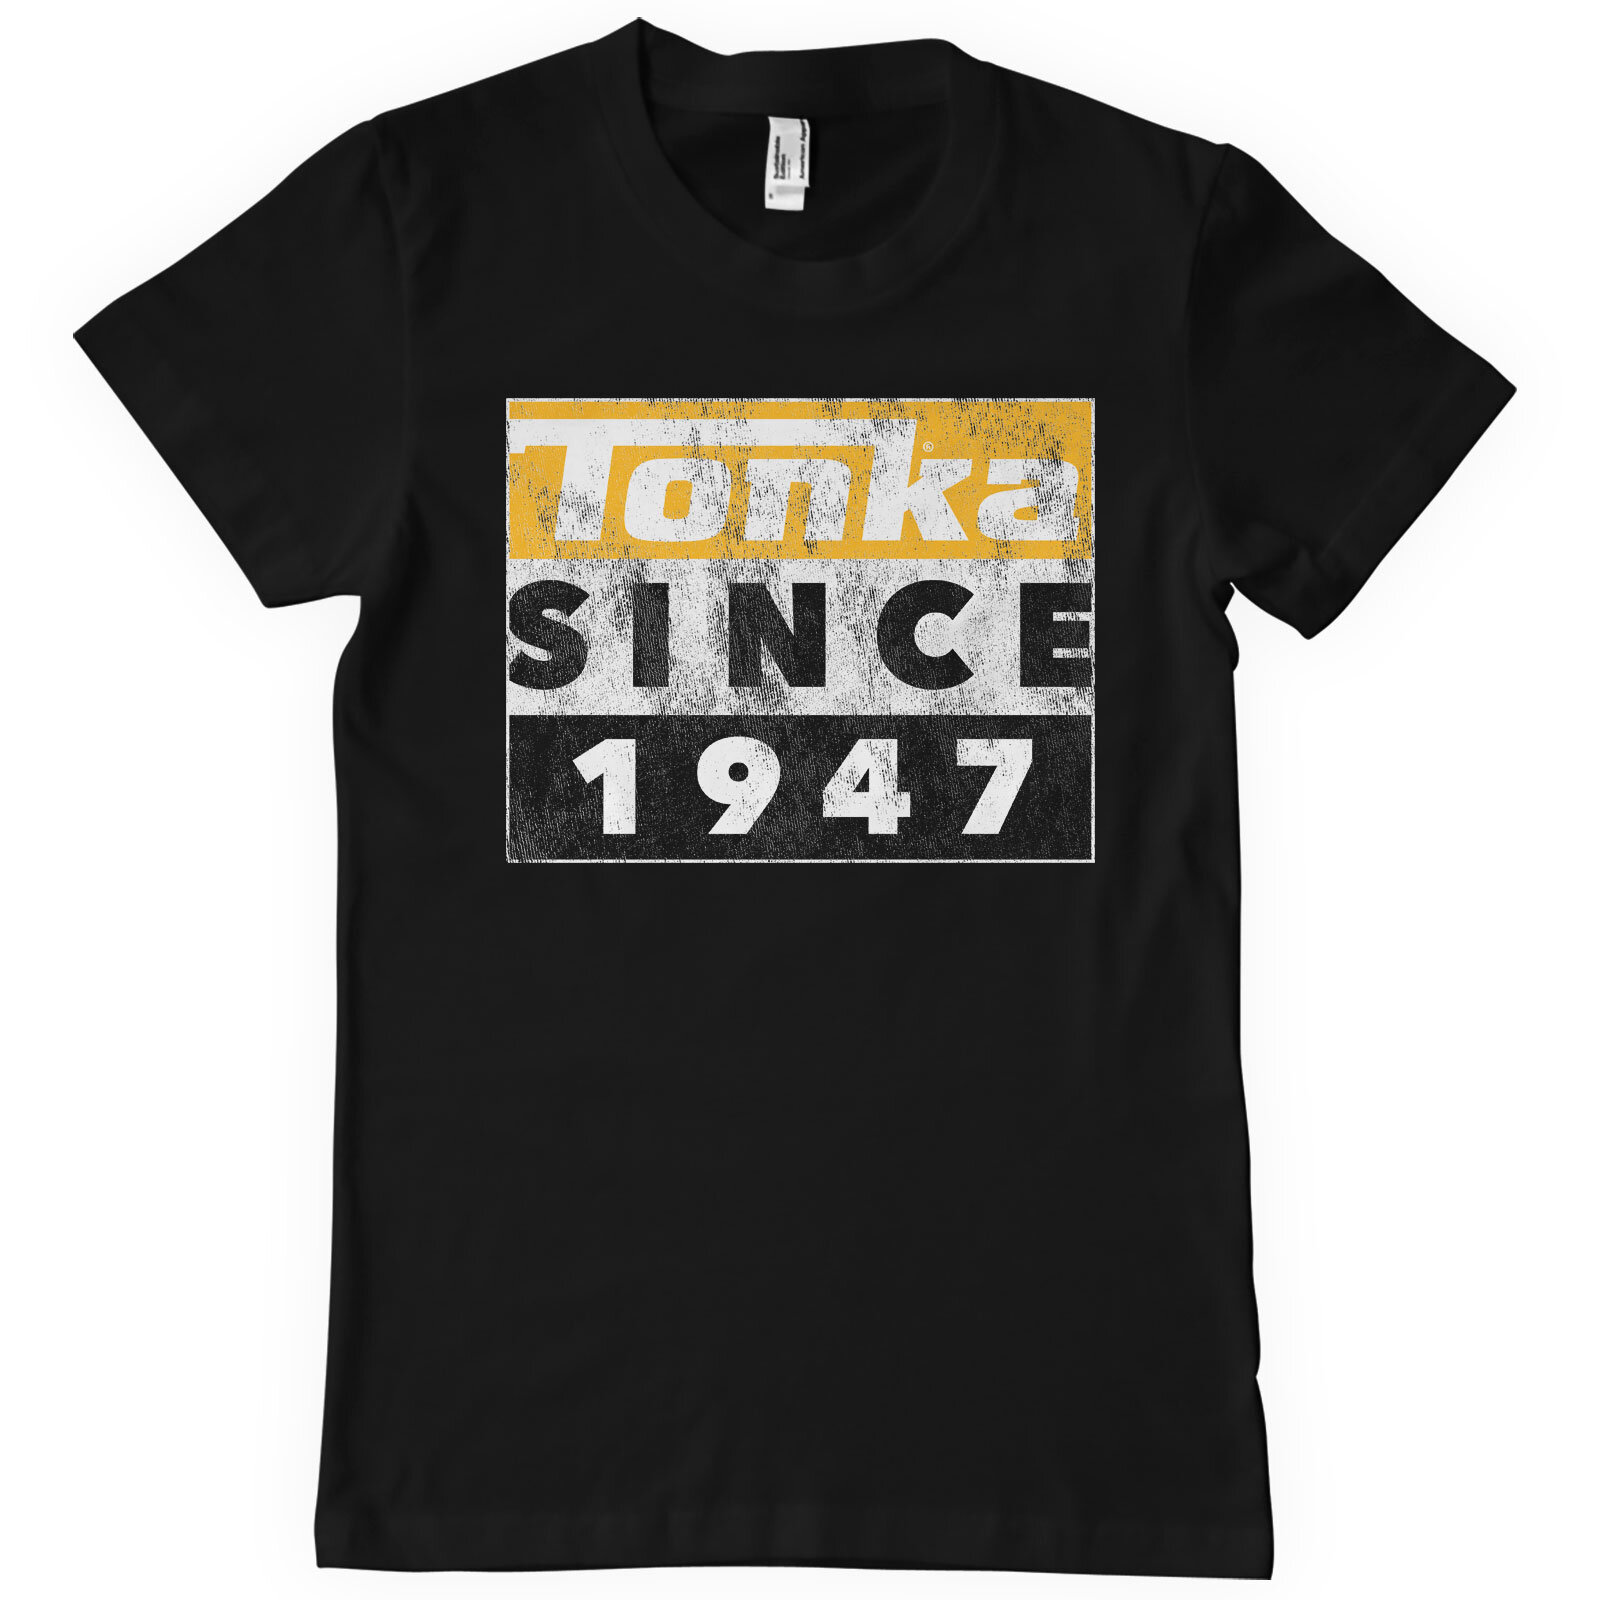 Tonka Since 1947 T-Shirt